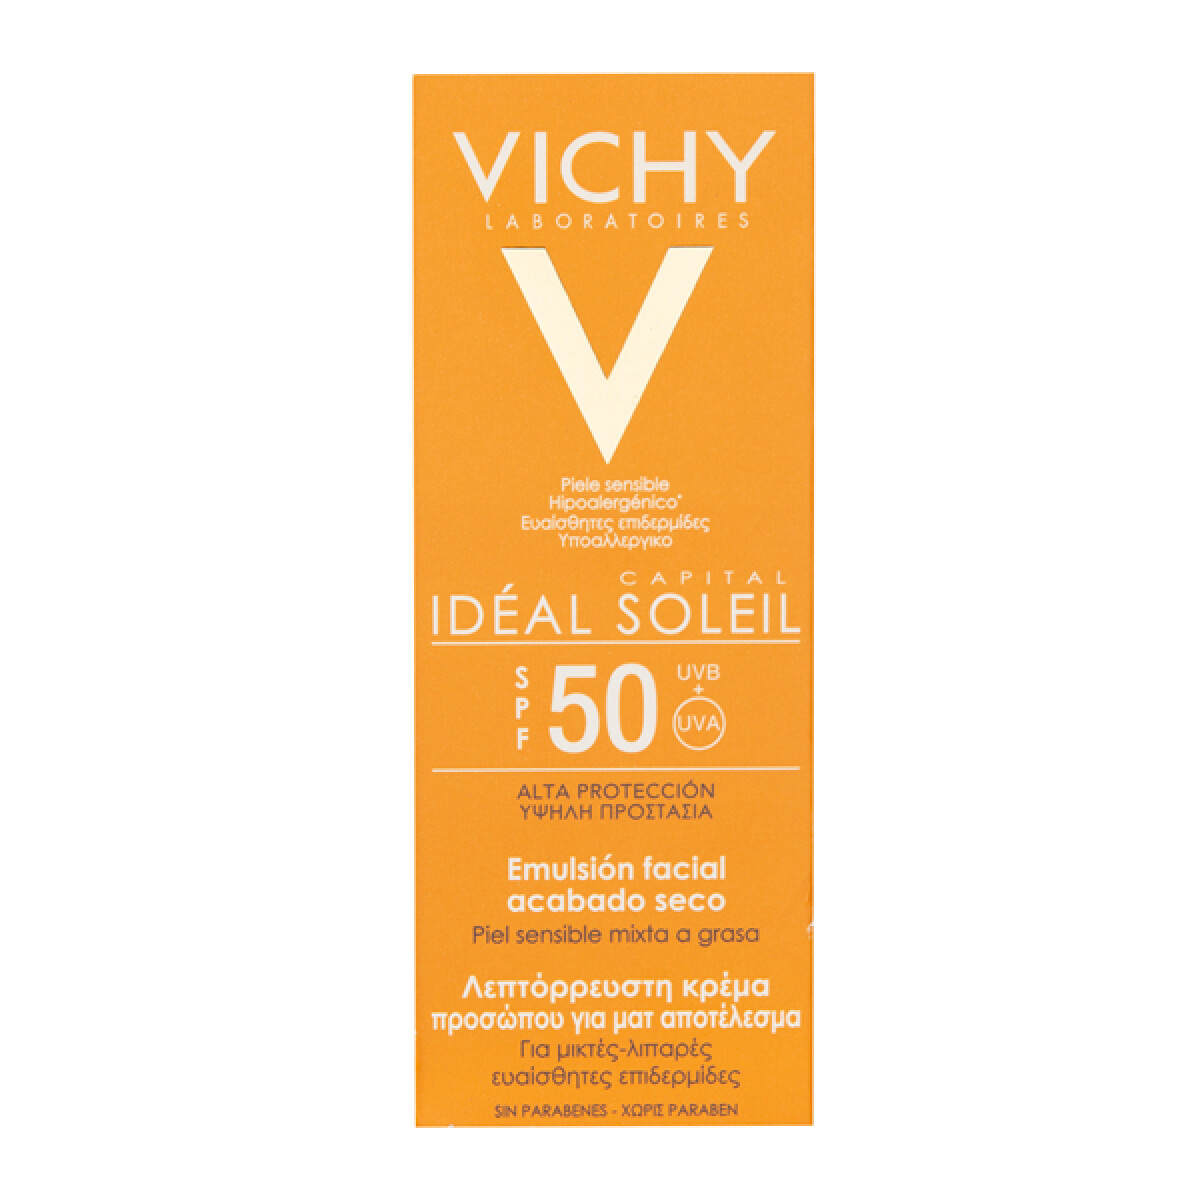 Idéal Soleil emulsión acabado seco FPS 50 Vichy 